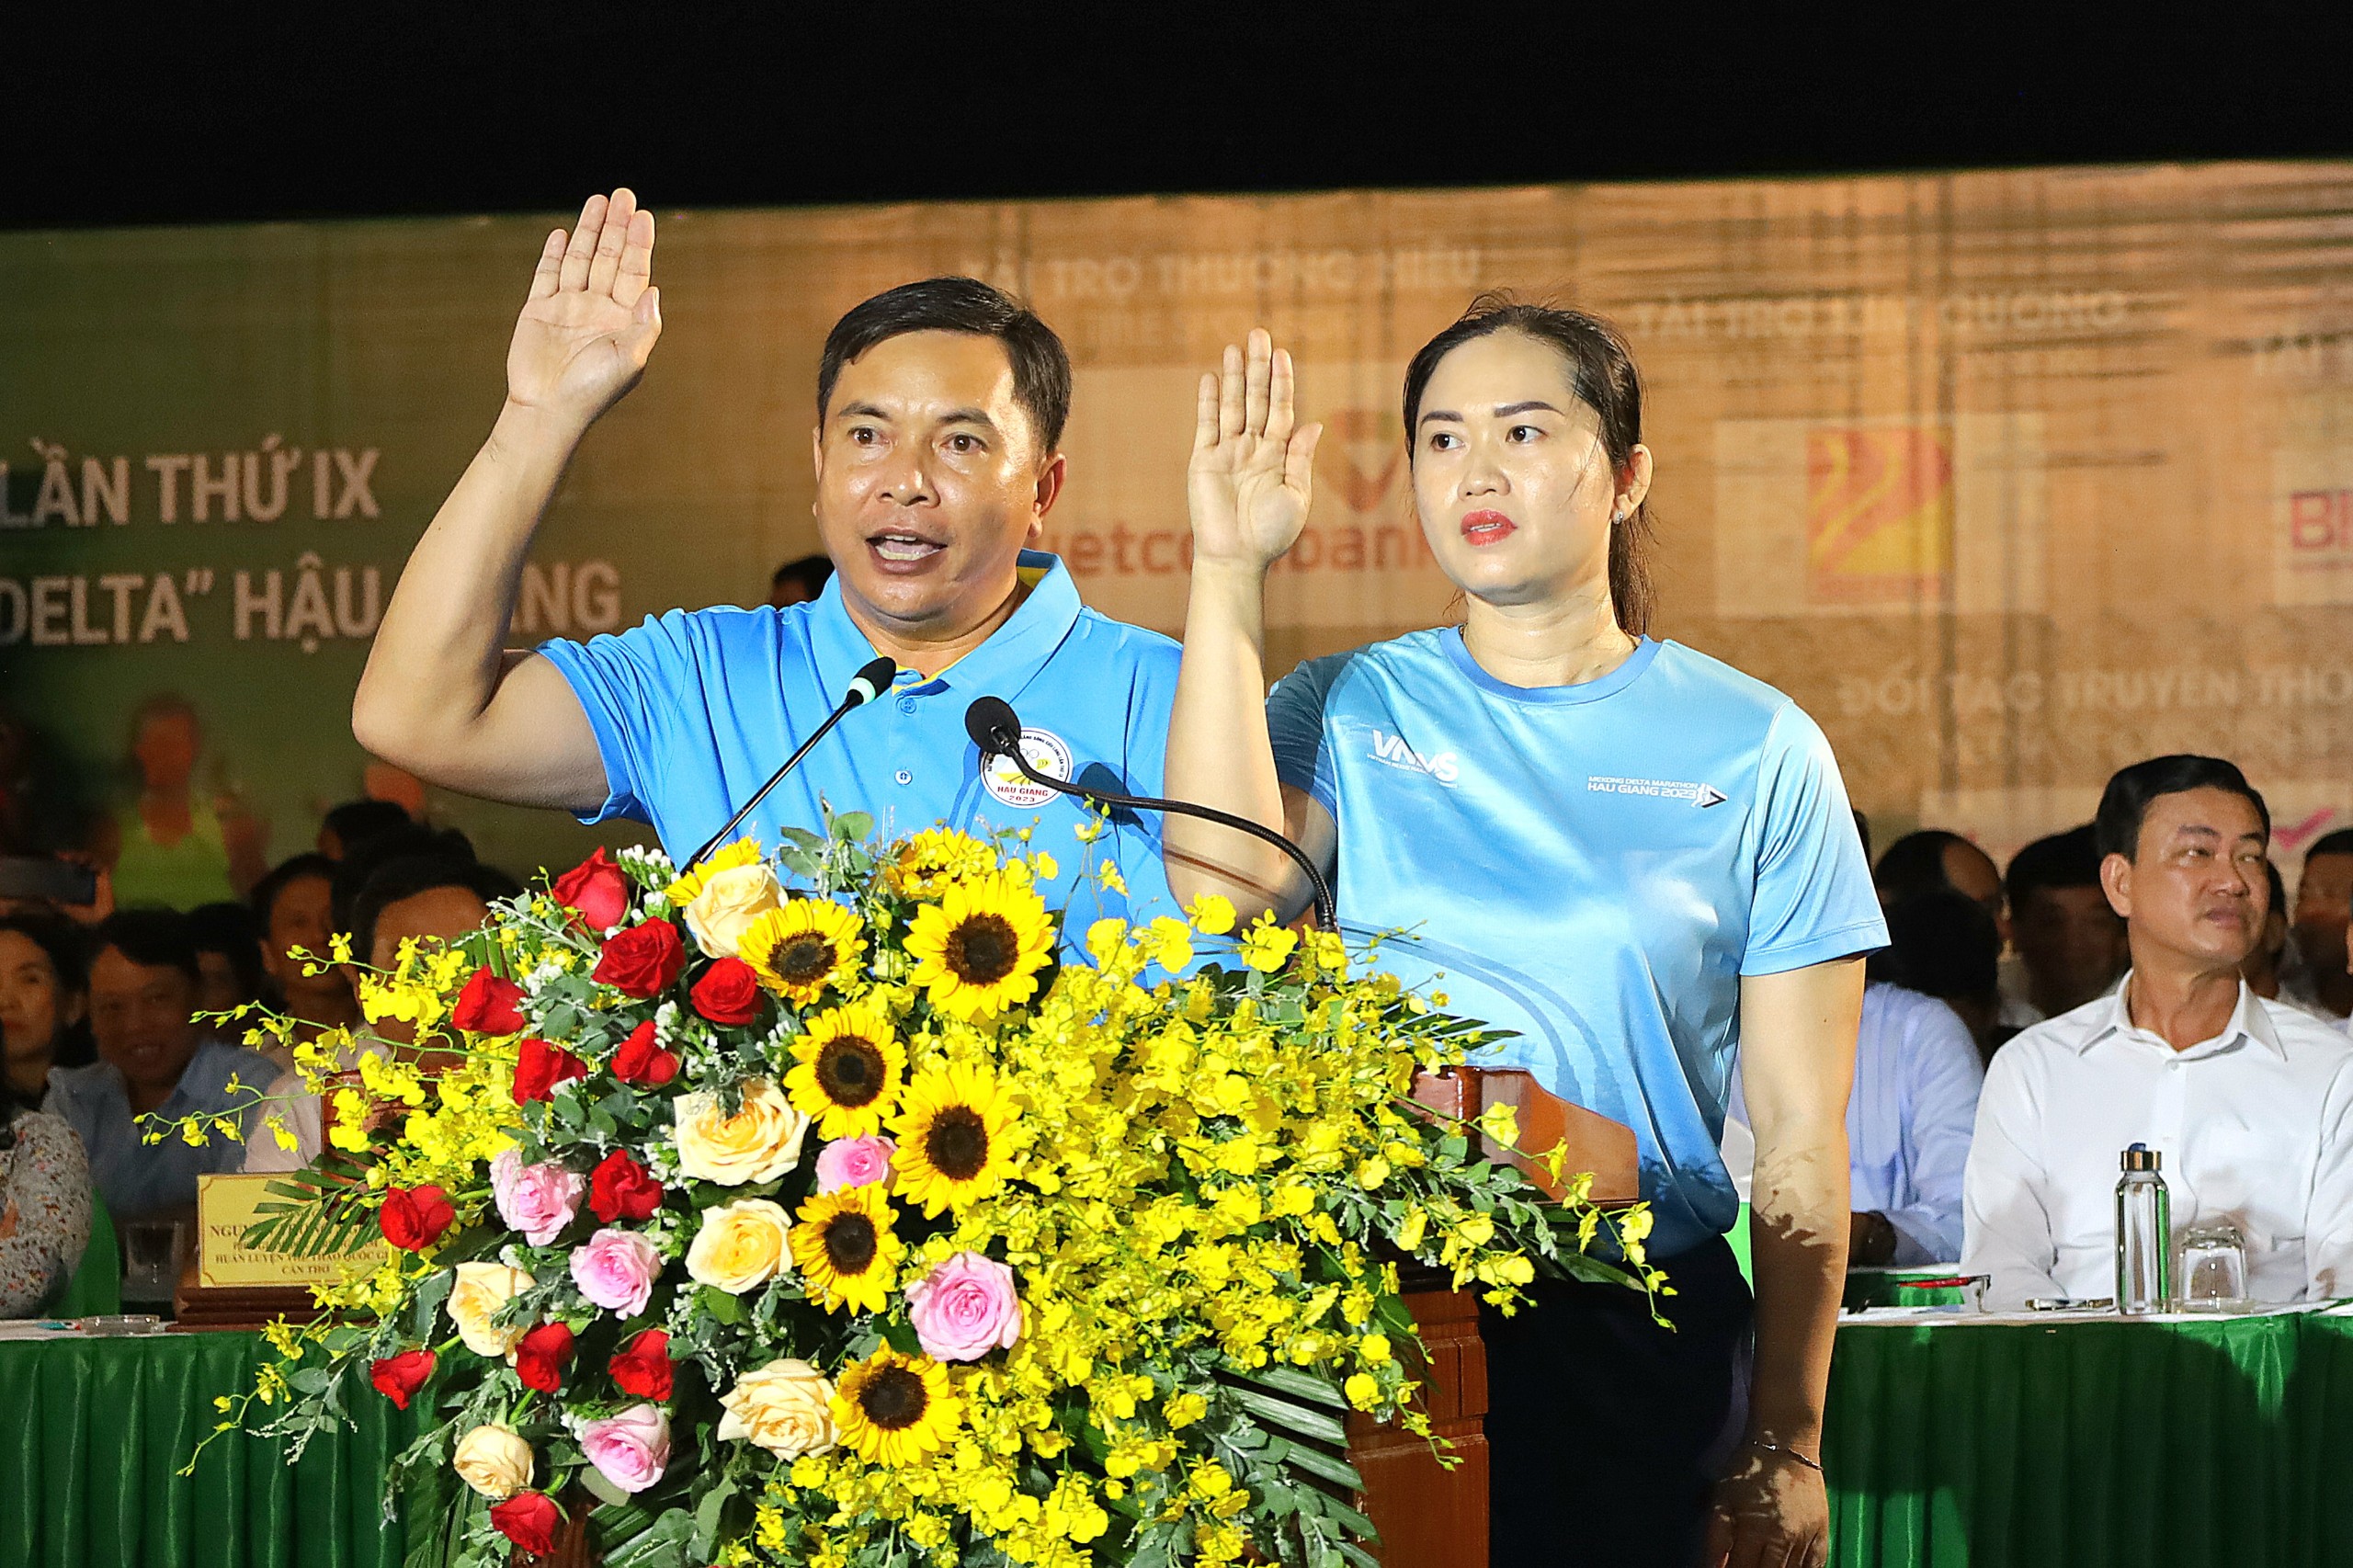 Đại diện trọng tài điều hành tại Đại hội Thể thao đồng bằng sông Cửu Long lần thứ IX và Giải Marathon quốc tế “Vietcombank Mekong Delta” Hậu Giang phát biểu tuyên thệ.